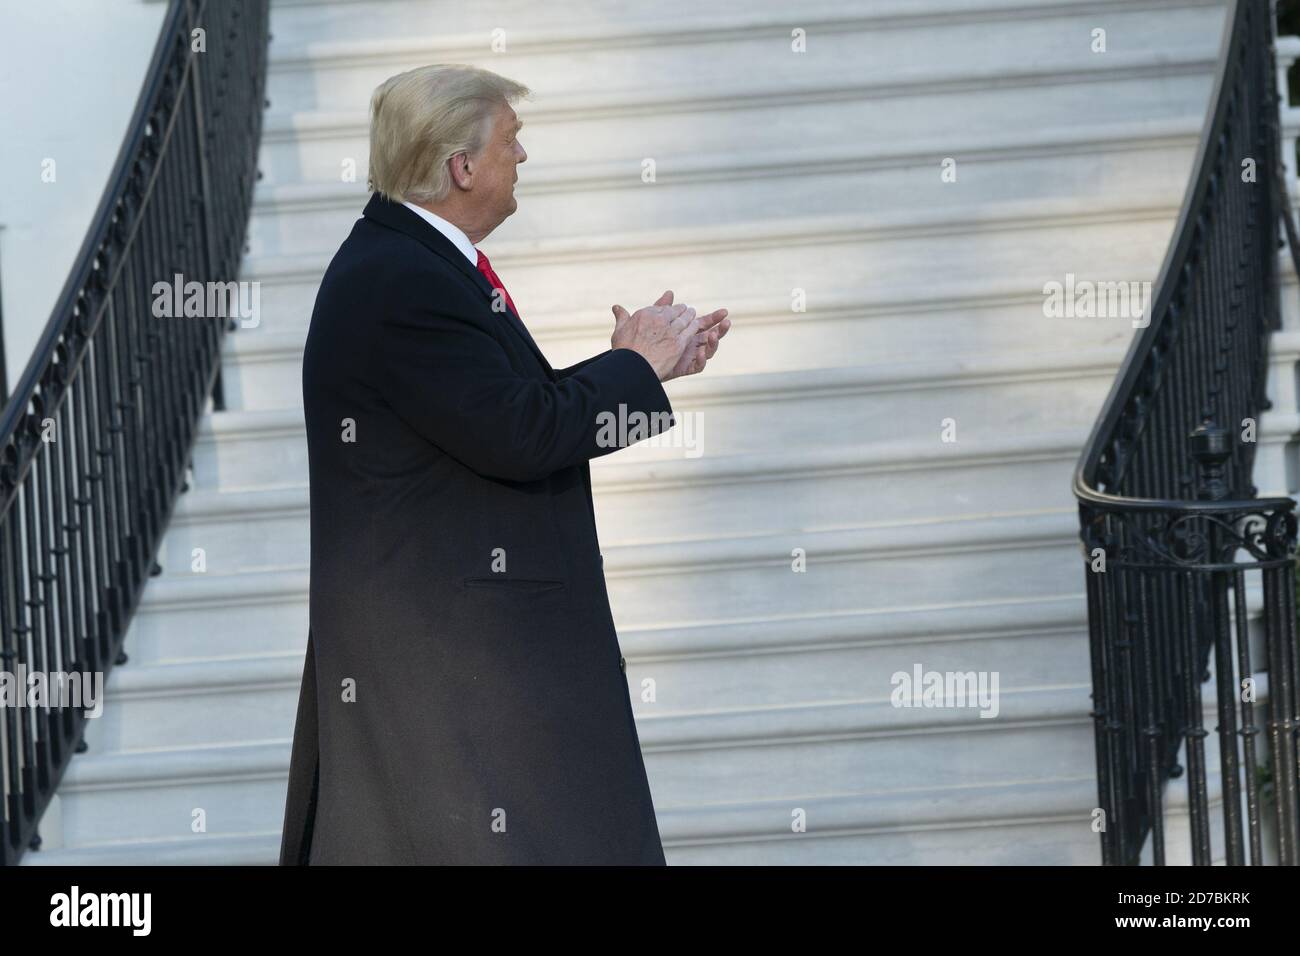 Washington, Usa. Oktober 2020. US-Präsident Donald Trump verlässt am Mittwoch, den 21. Oktober 2020, das Weiße Haus in Washington, DC. Pool Foto von Chris Kleponis/UPI Kredit: UPI/Alamy Live News Stockfoto